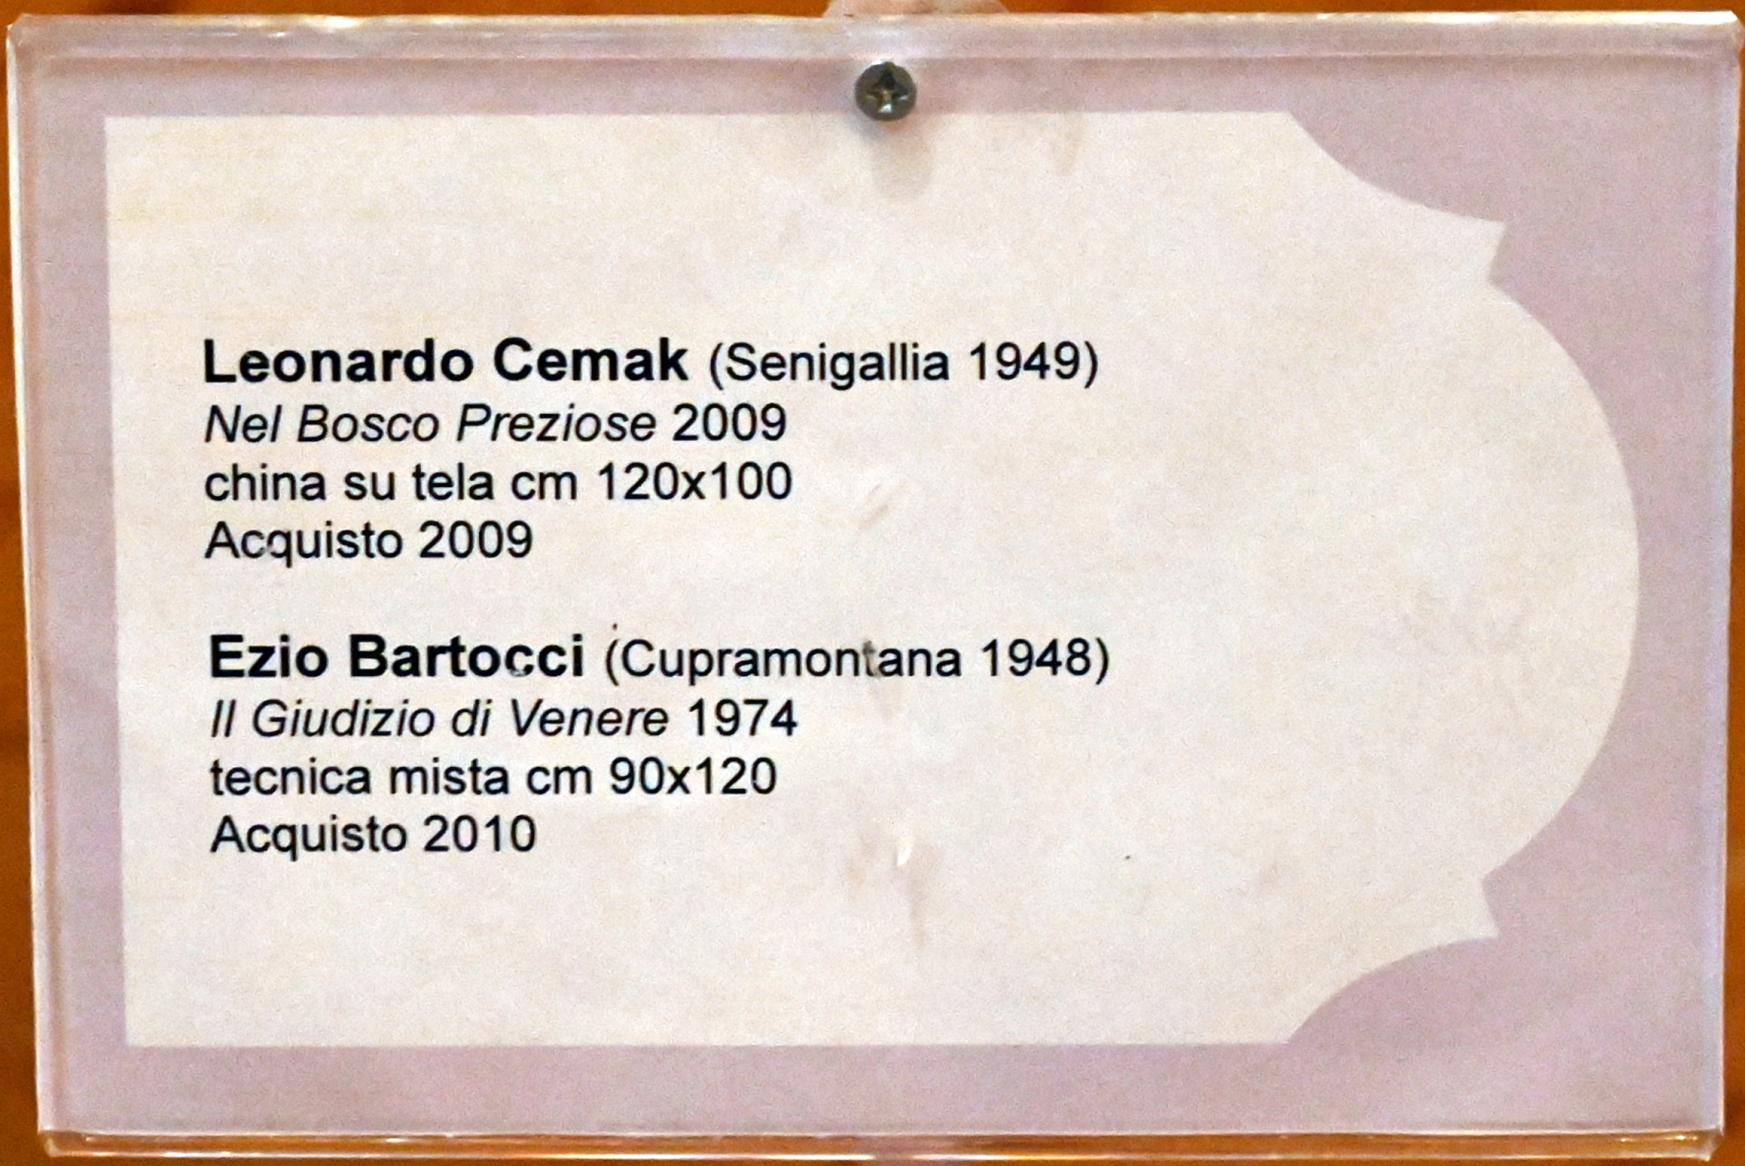 Ezio Bartocci (1974), Urteil der Venus, Jesi, Städtische Kunstgalerie, Obergeschoss Saal 7, 1974, Bild 2/2